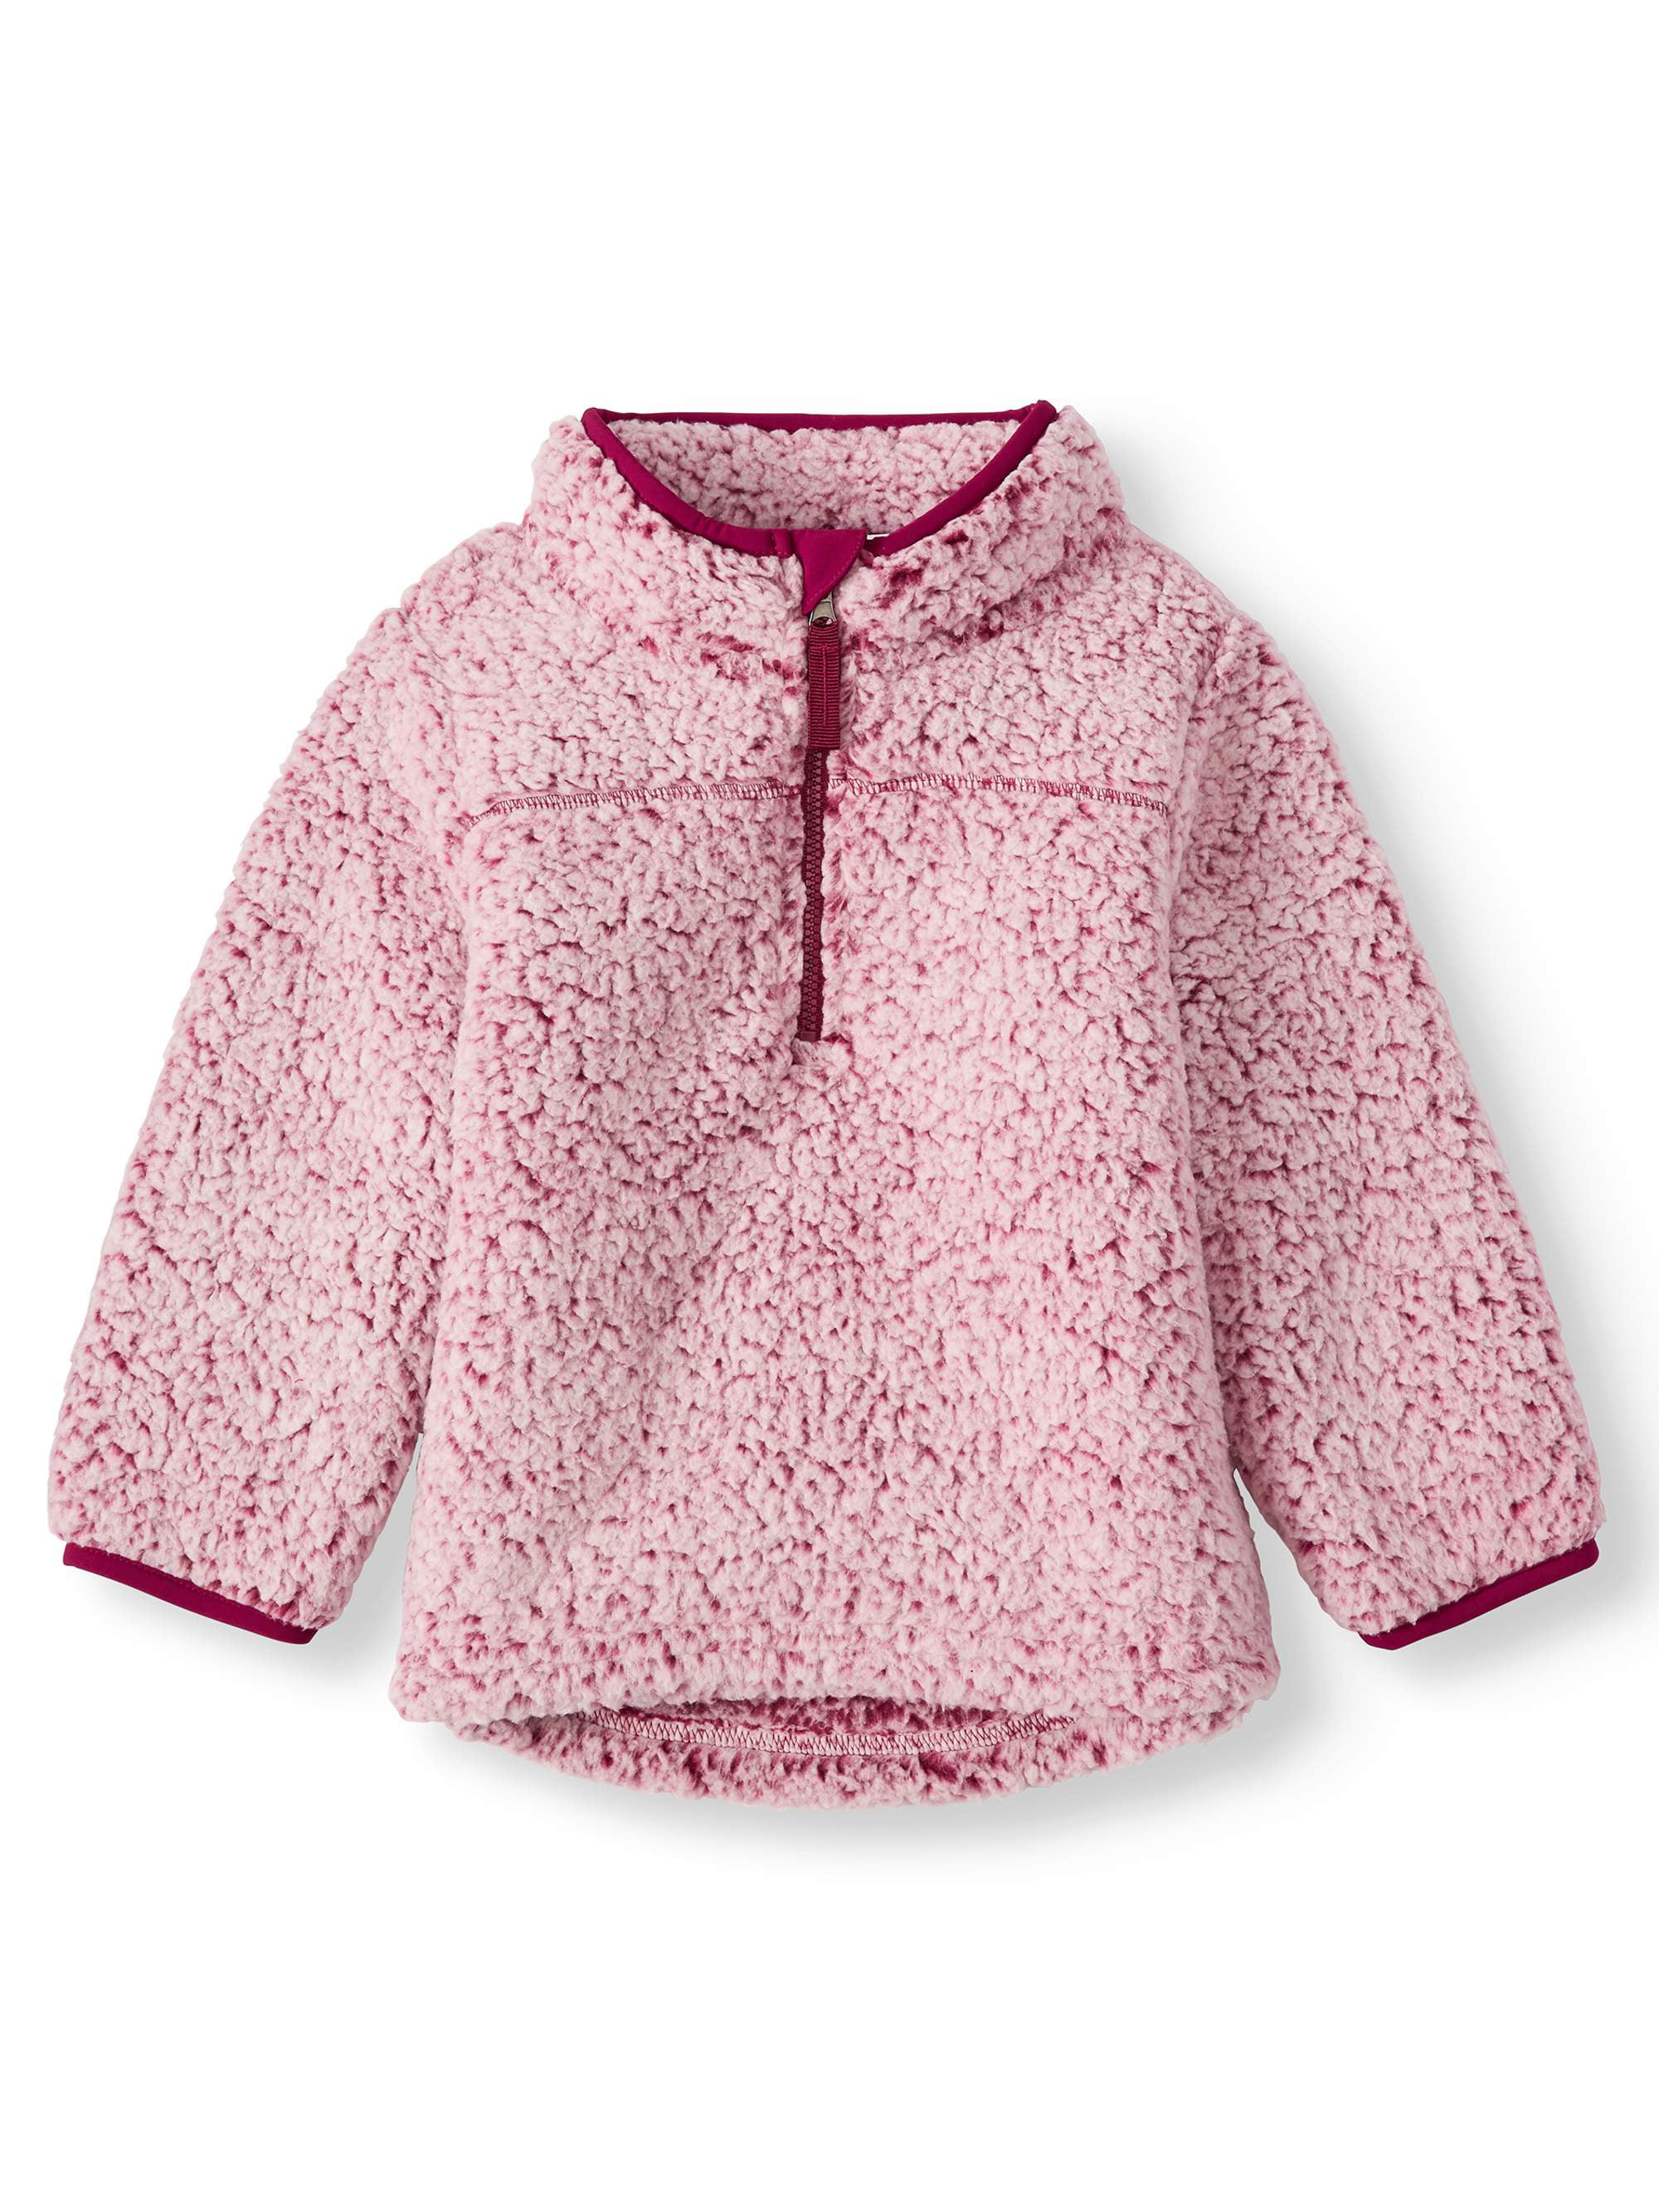 Azokoe Girls Kids 1/4 Zip Fleece Pullover Jacket Tops Casual Color Block Fuzzy Sweatshirt Coat Outwear 4-13 Years 